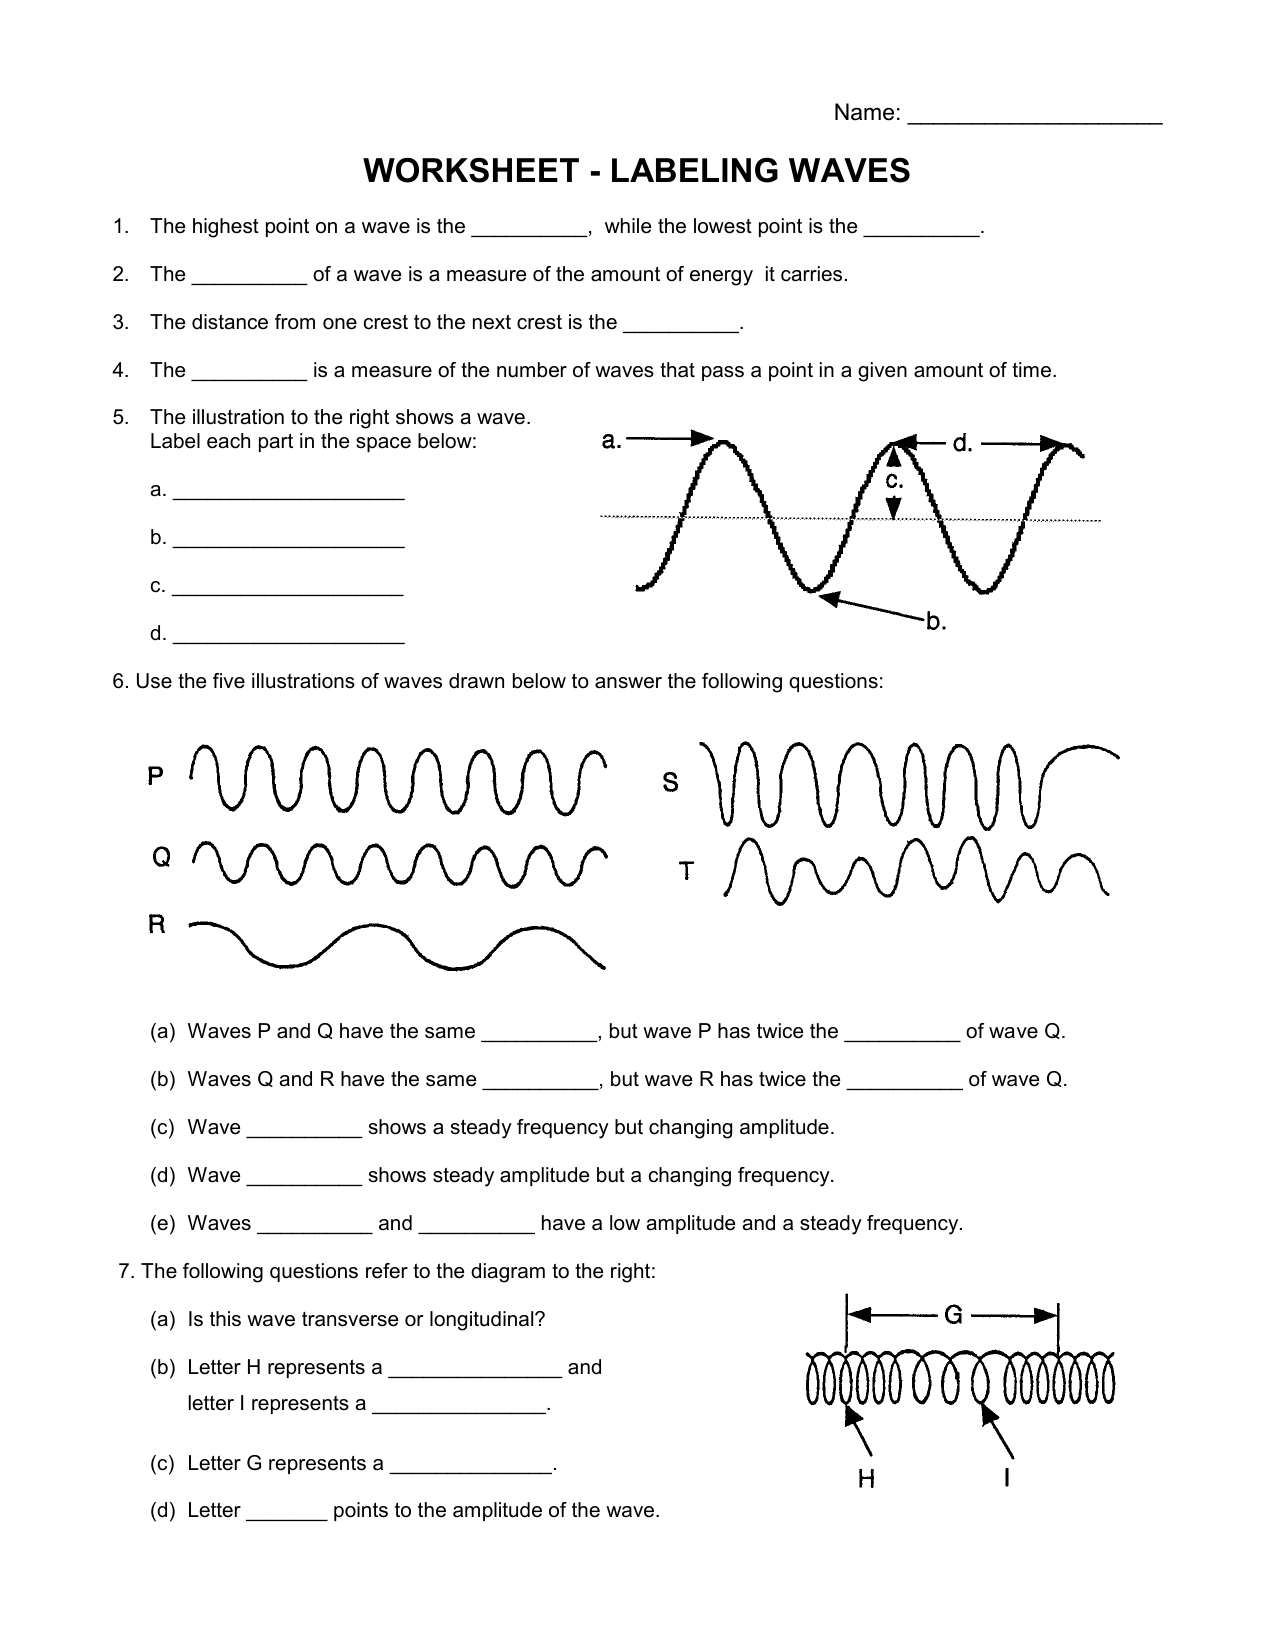 Labeling Waves Worksheet Inside Waves Worksheet Answer Key